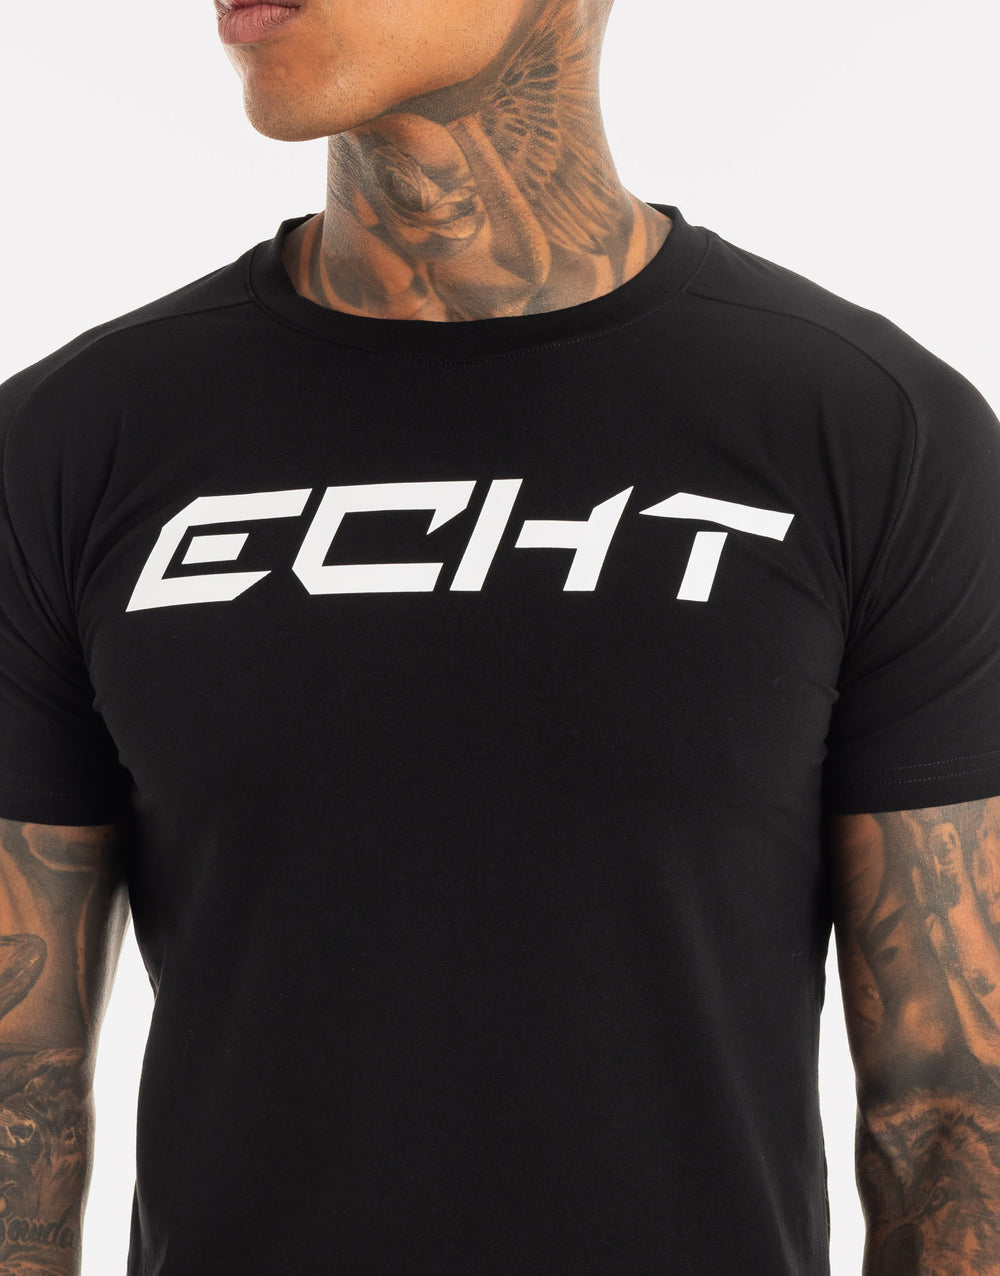 Echt Core T-Shirt - Black